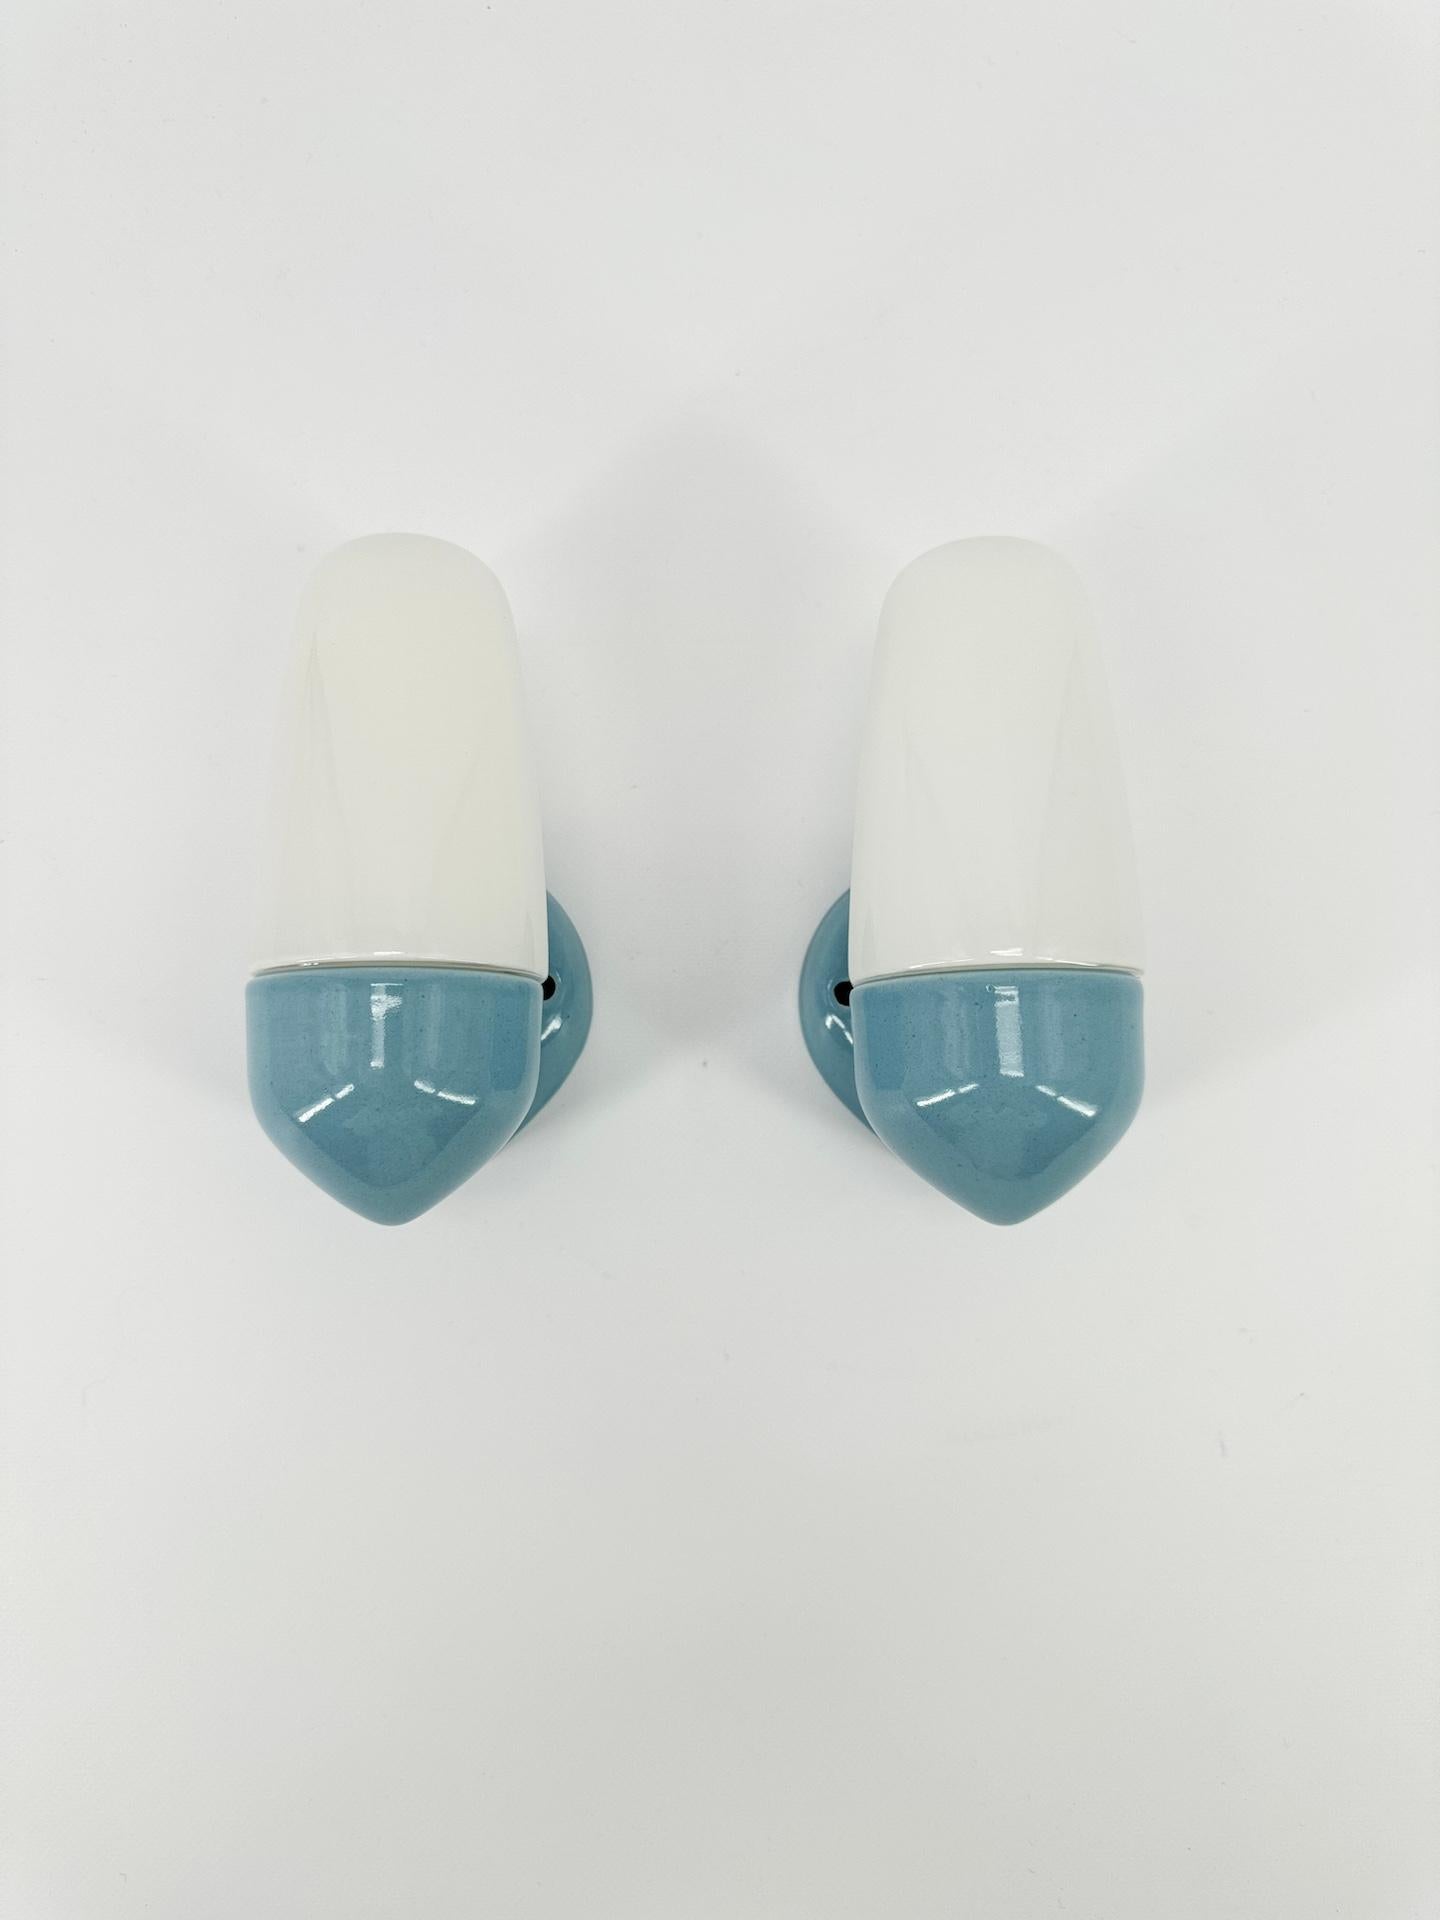 Paire d'appliques en porcelaine bleue et abat-jour en verre opalin conçues par le designer allemand Wilhelm Wagenfeld, qui a étudié à l'école du Bauhaus. 

Datant de 1958, cette applique murale présente des lignes épurées, rondes et élégantes, un